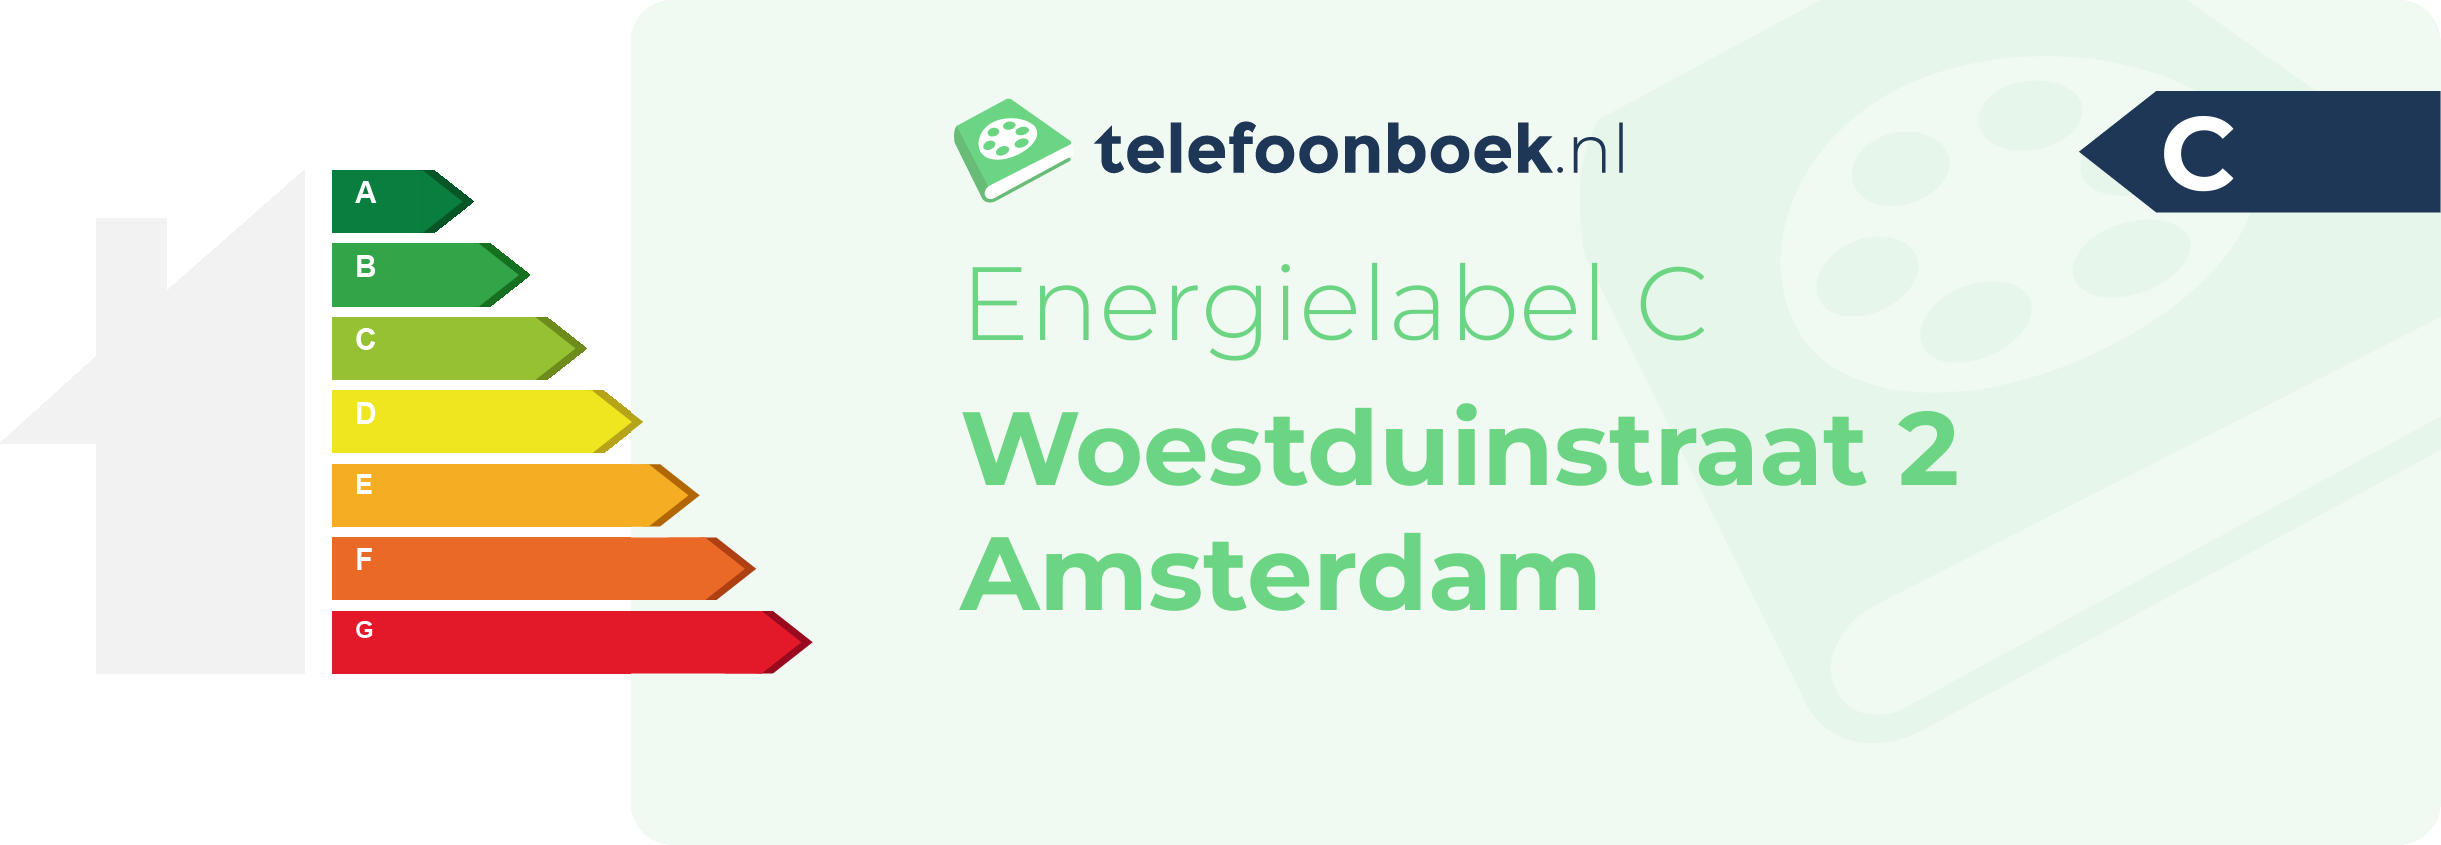 Energielabel Woestduinstraat 2 Amsterdam